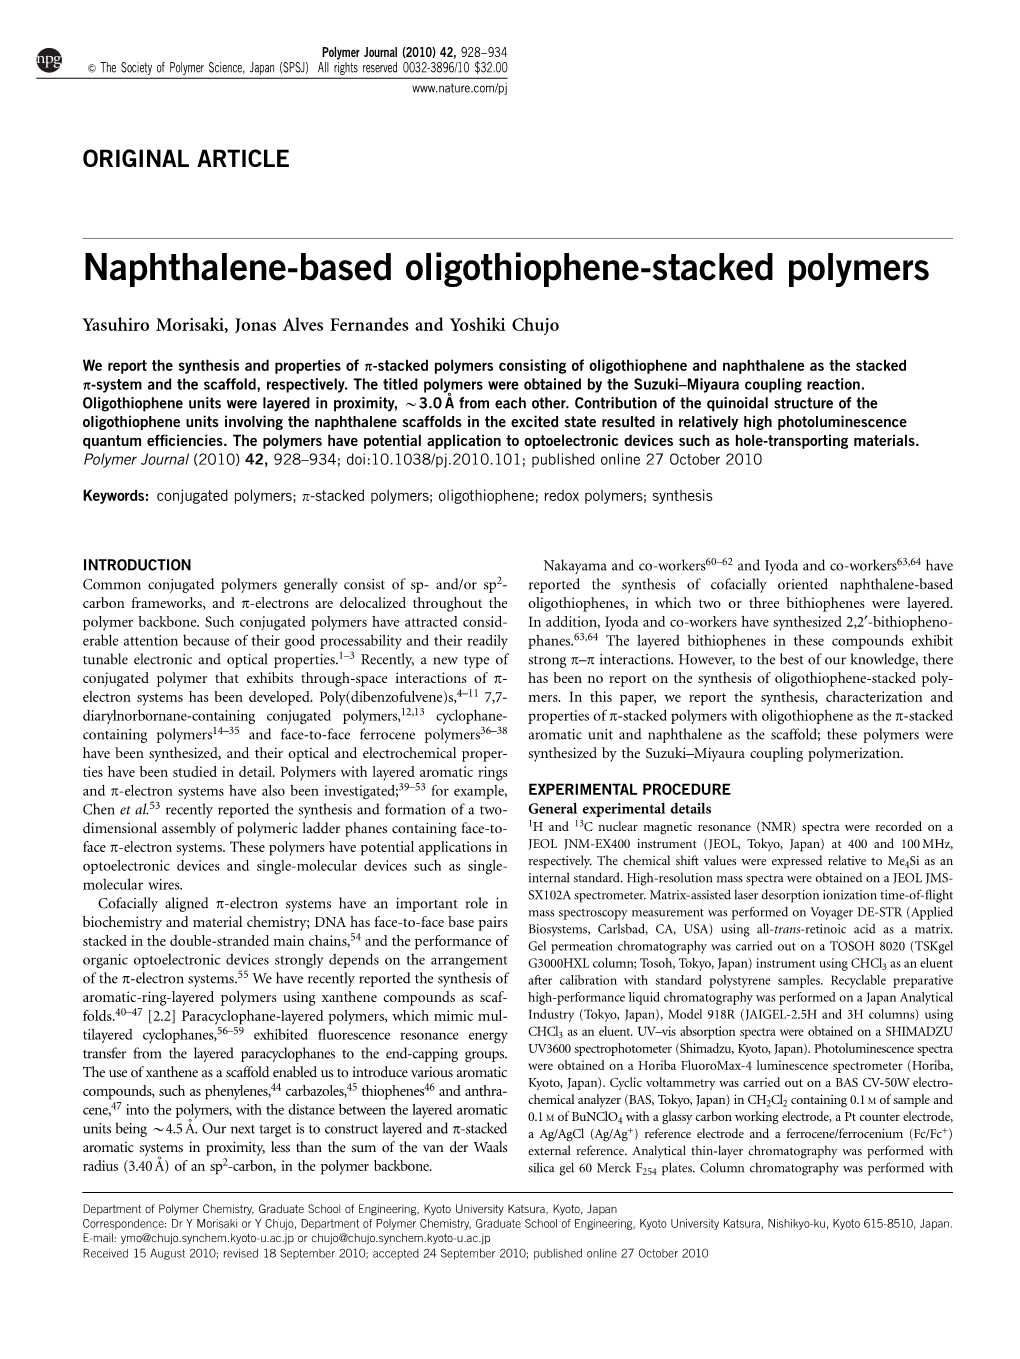 Naphthalene-Based Oligothiophene-Stacked Polymers